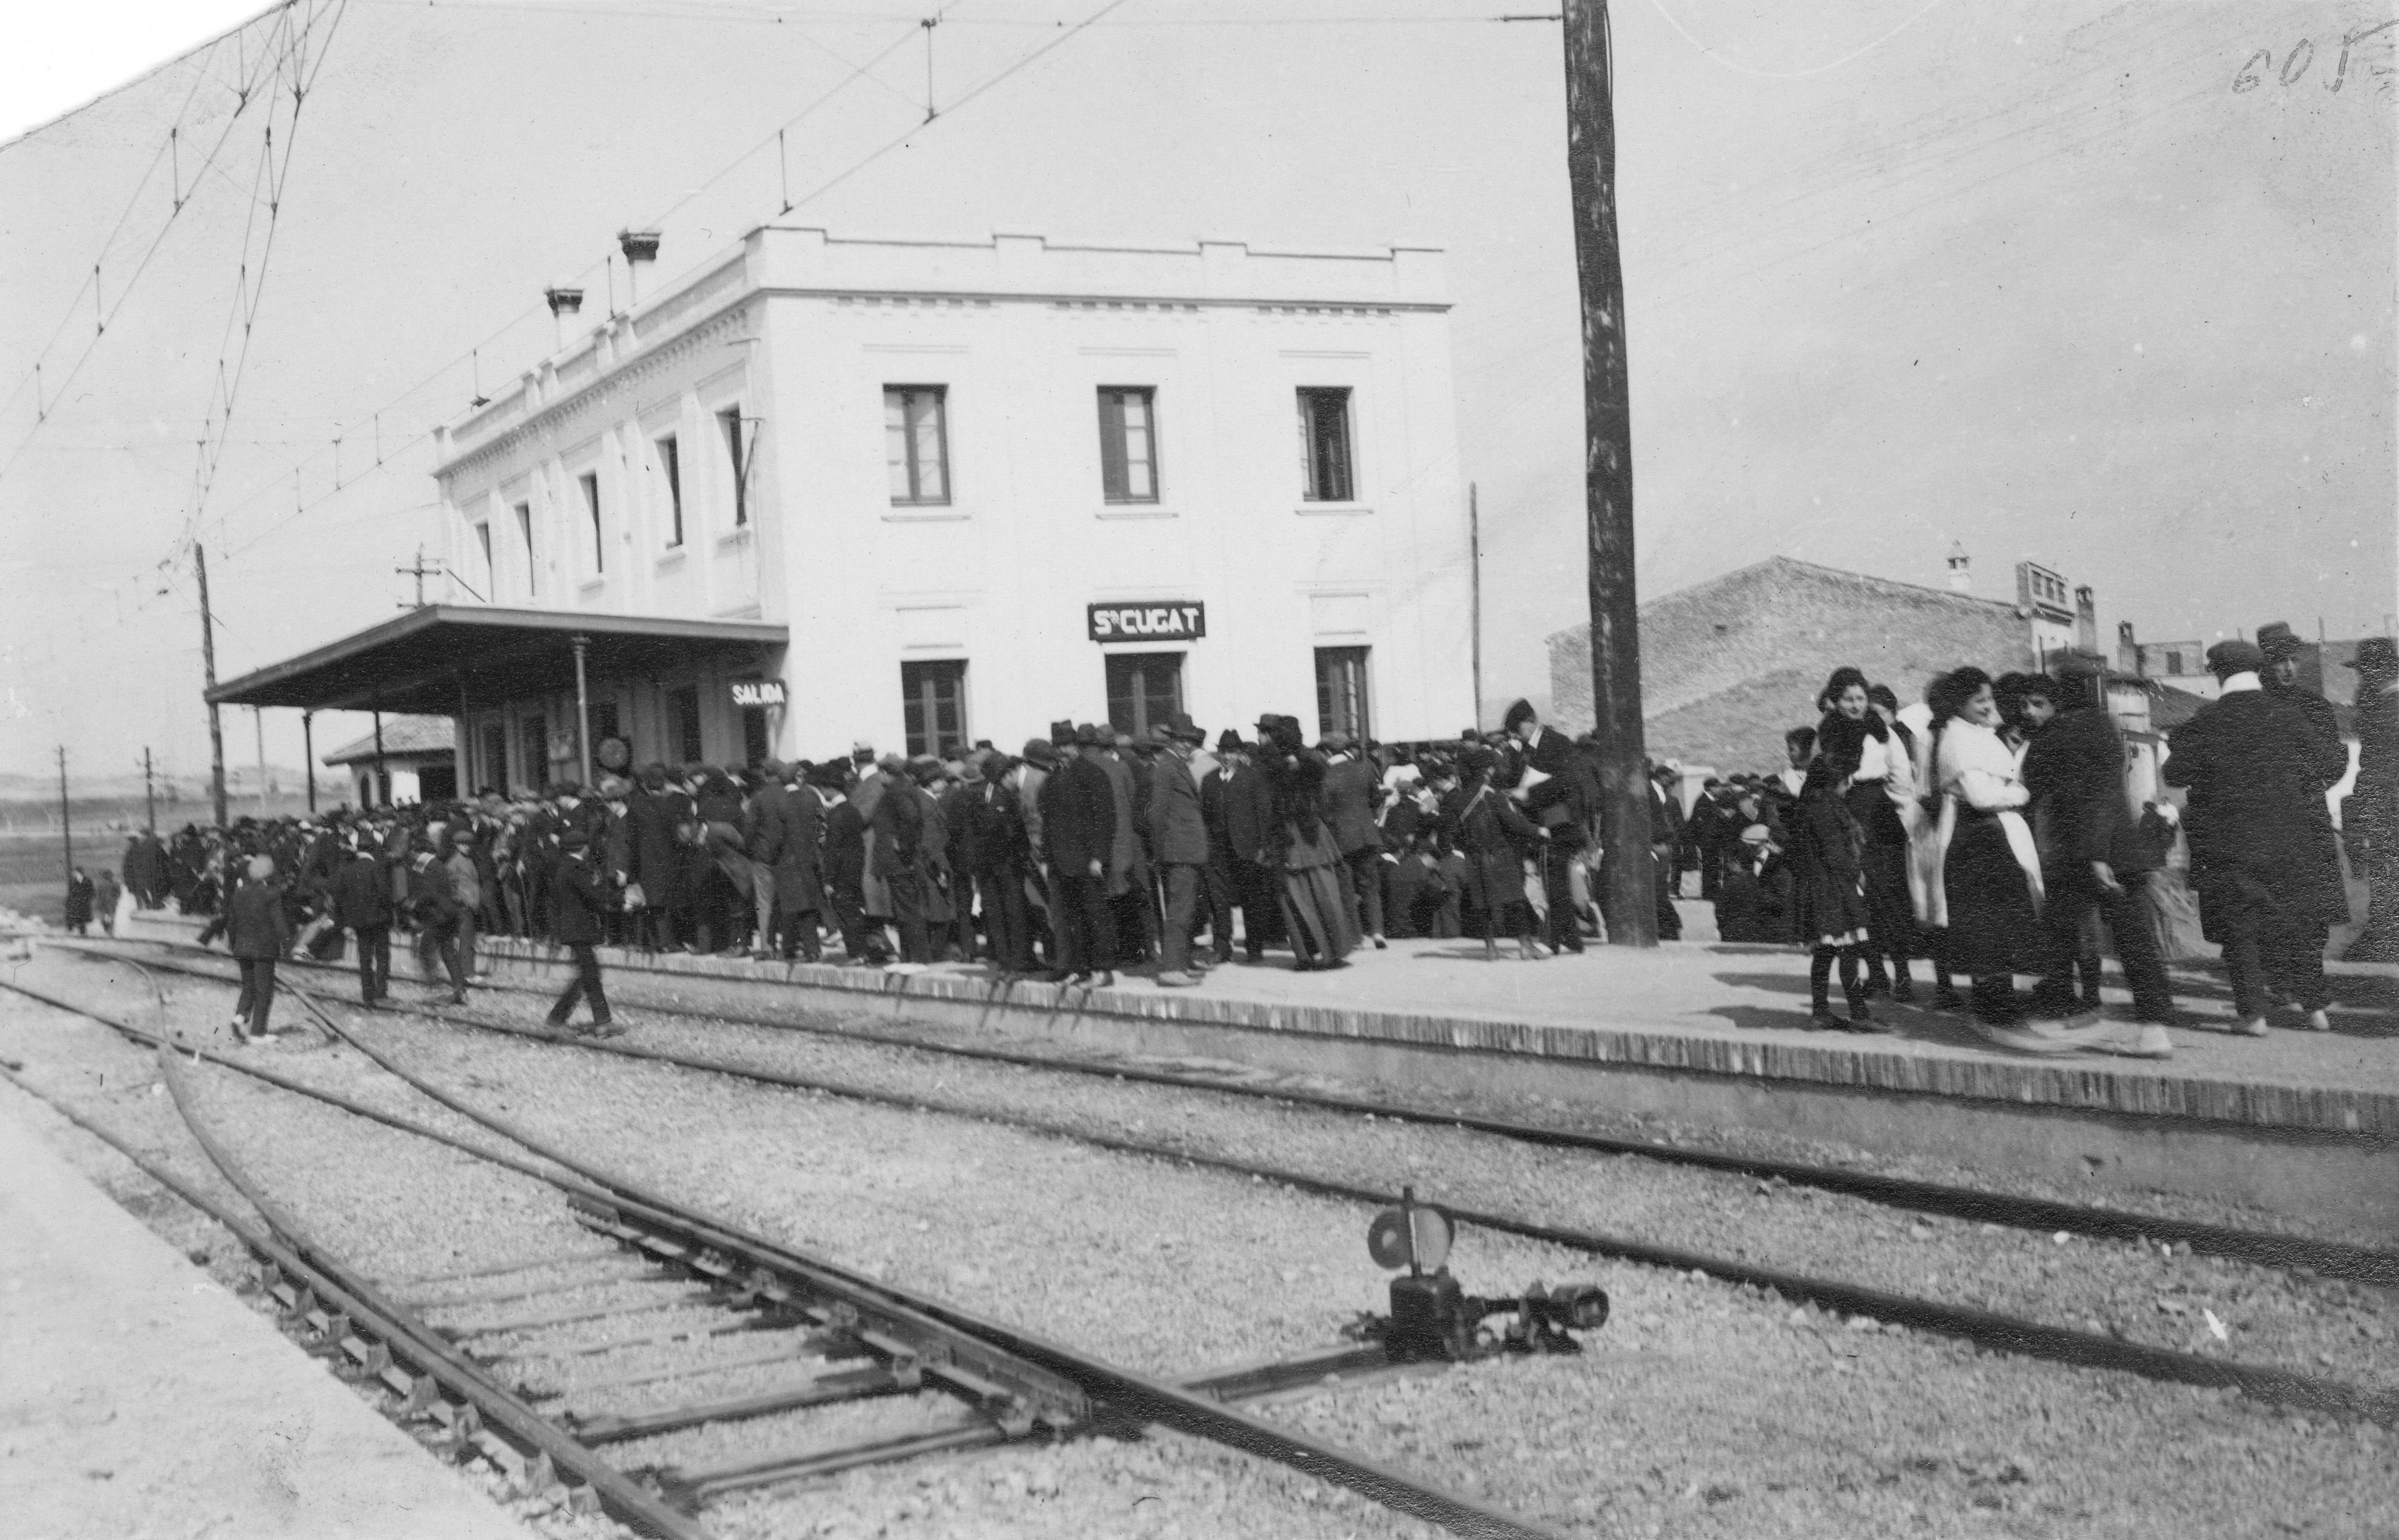 Les arribades dels trens despertaven molta expectació entre la ciutadania de llavors FOTO: Arxiu FGC